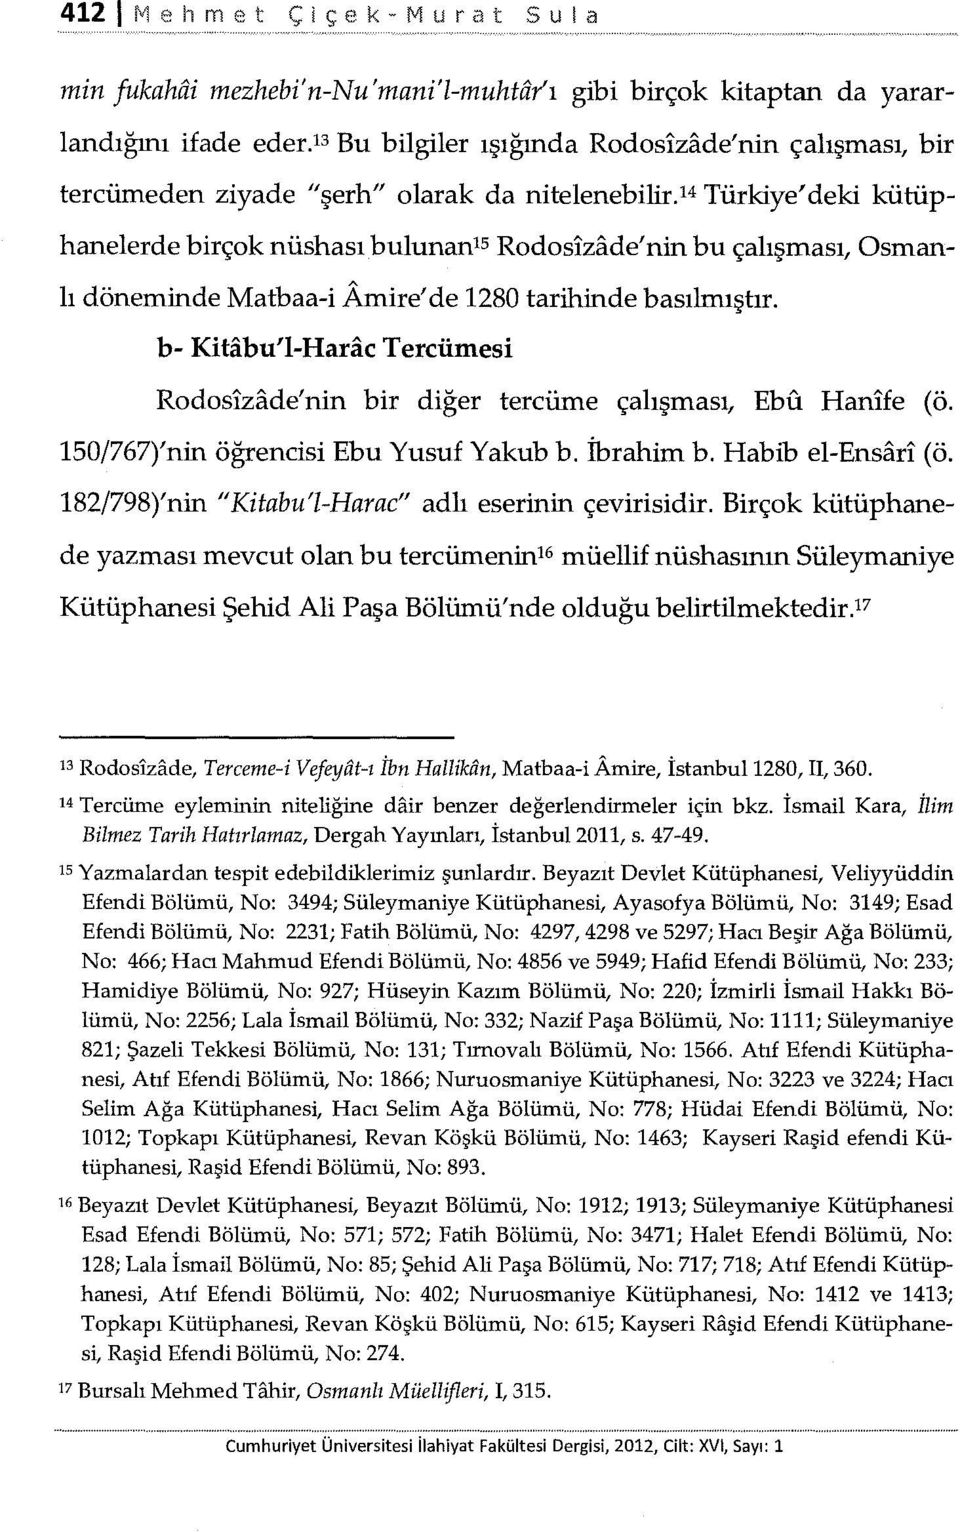 b- Kitabu'l-Harac Tercümesi Rodosizade'nin bir diğer tercüme çalışması, Ebu Hanife (ö. 150/767)'nin öğrencisi Ebu Yusuf Yakub b. İbrahim b. Habib el-ensari (ö.